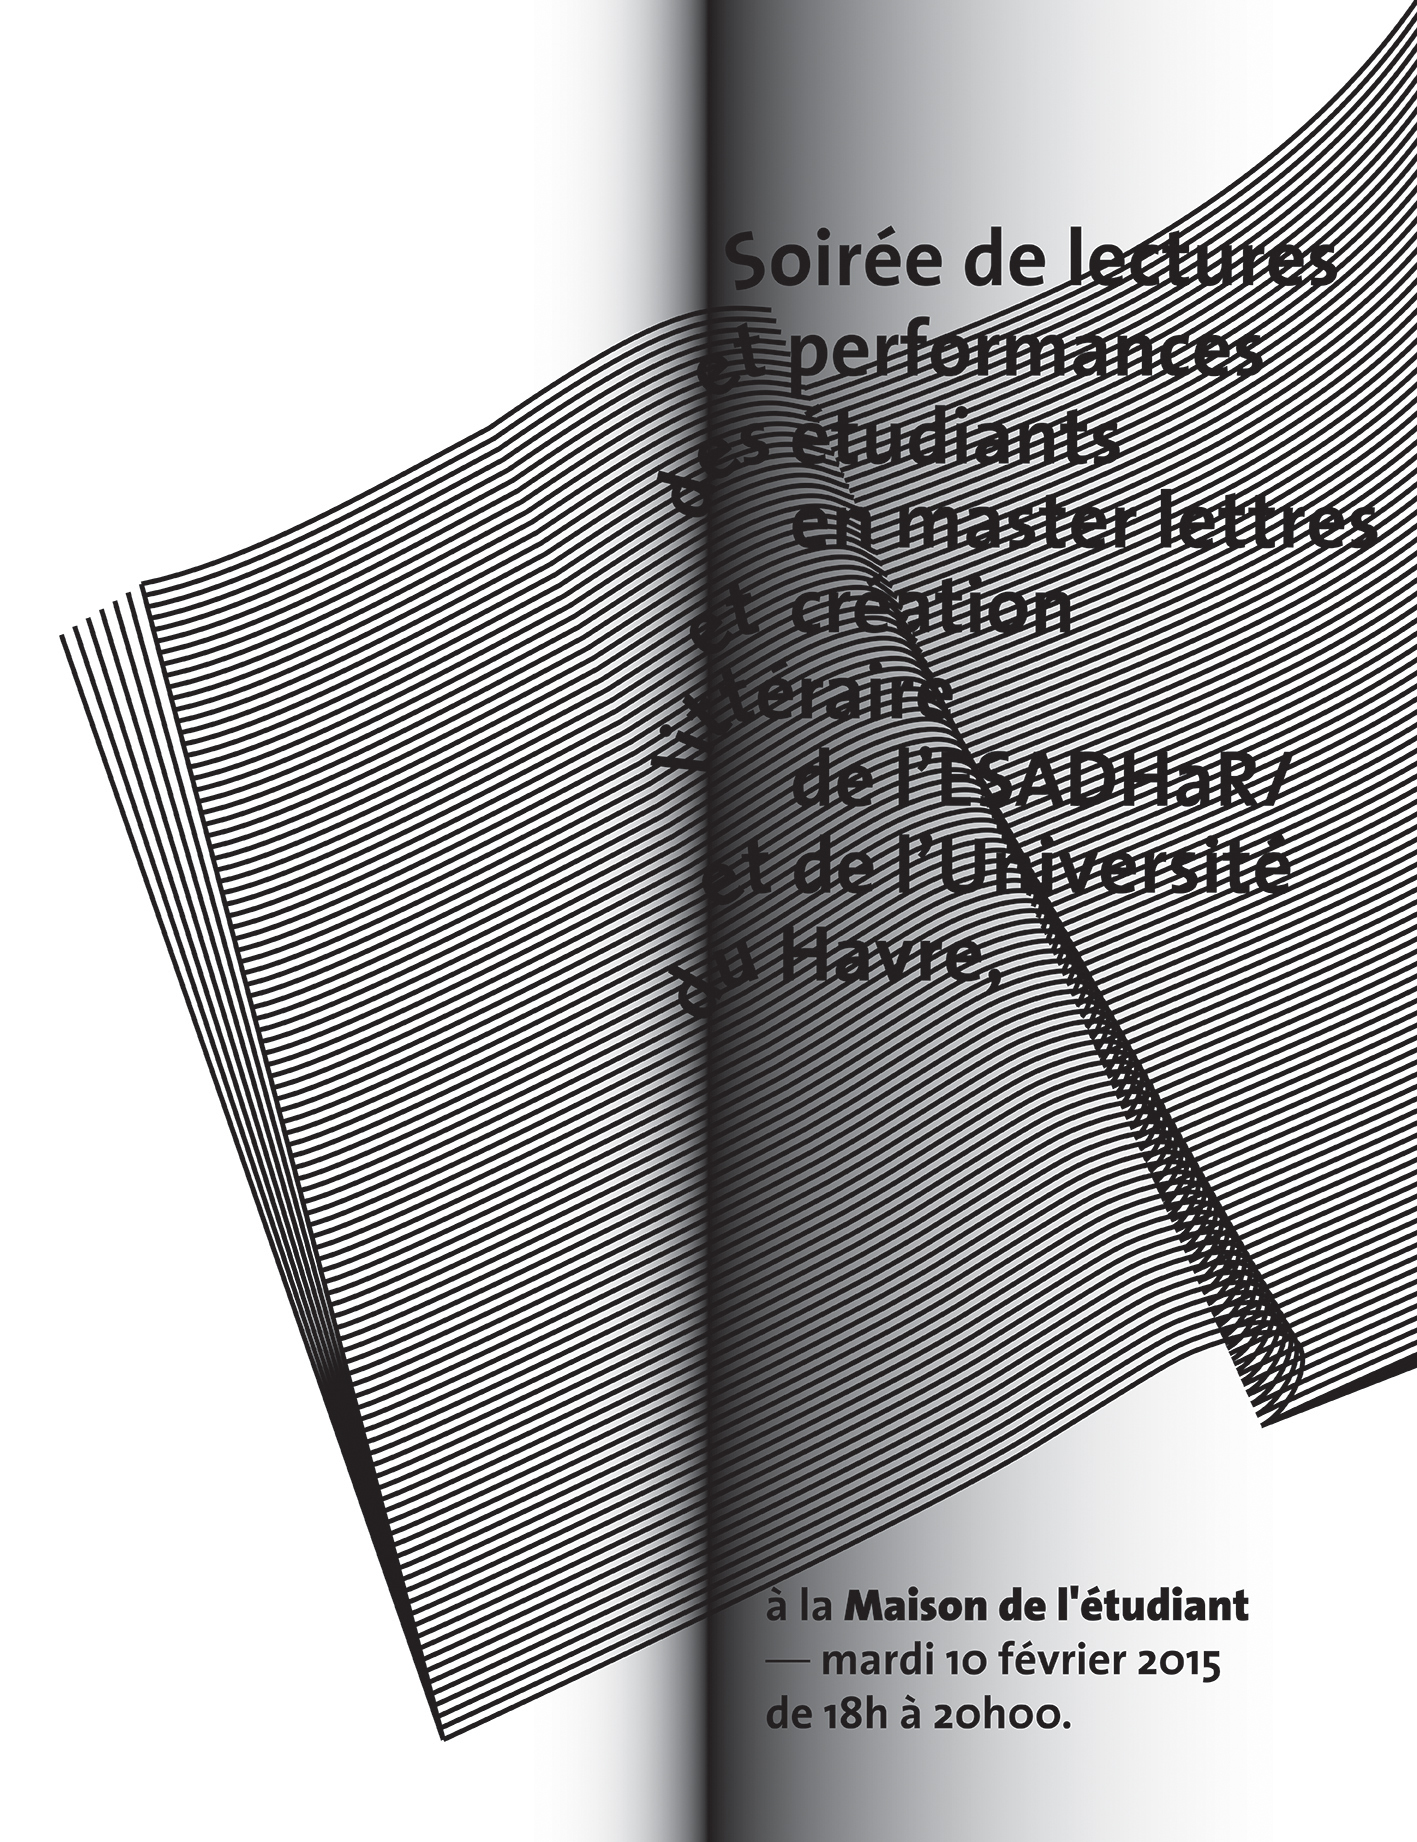 Affiche pour une soirée de lectures et de performances du master lettres et création littéraire du Havre